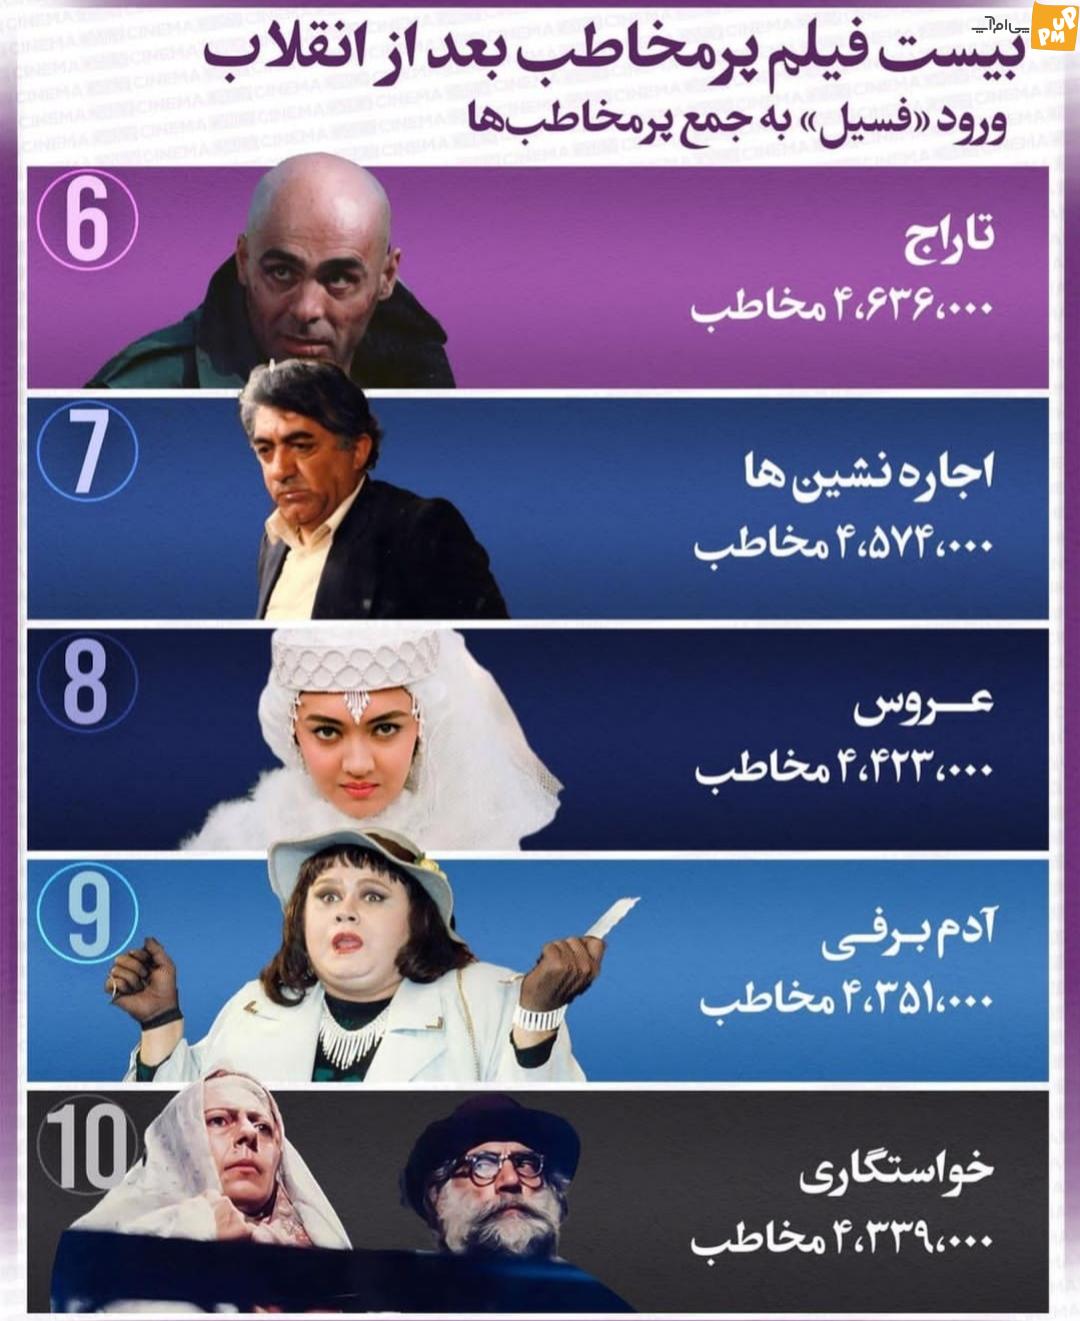 لیست ۲۰ فیلم پر مخاطب بعد از انقلاب اسلامی/ فسیل به این لیست اضافه شد!